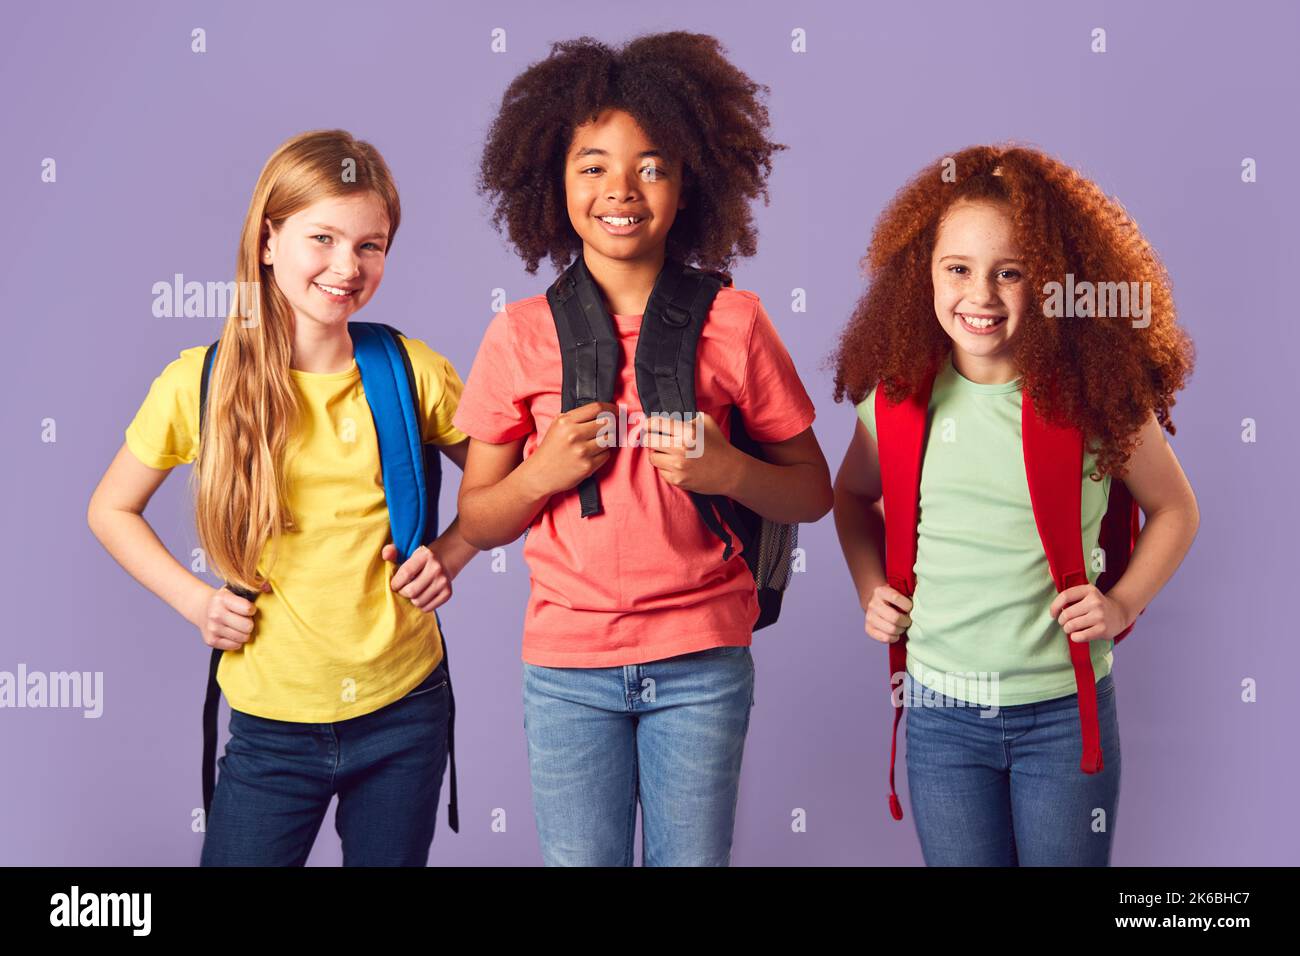 Studioaufnahme Von Drei Kindern Mit Rucksäcken, Die Zur Schule Gehen Auf Purpurem Hintergrund Stockfoto